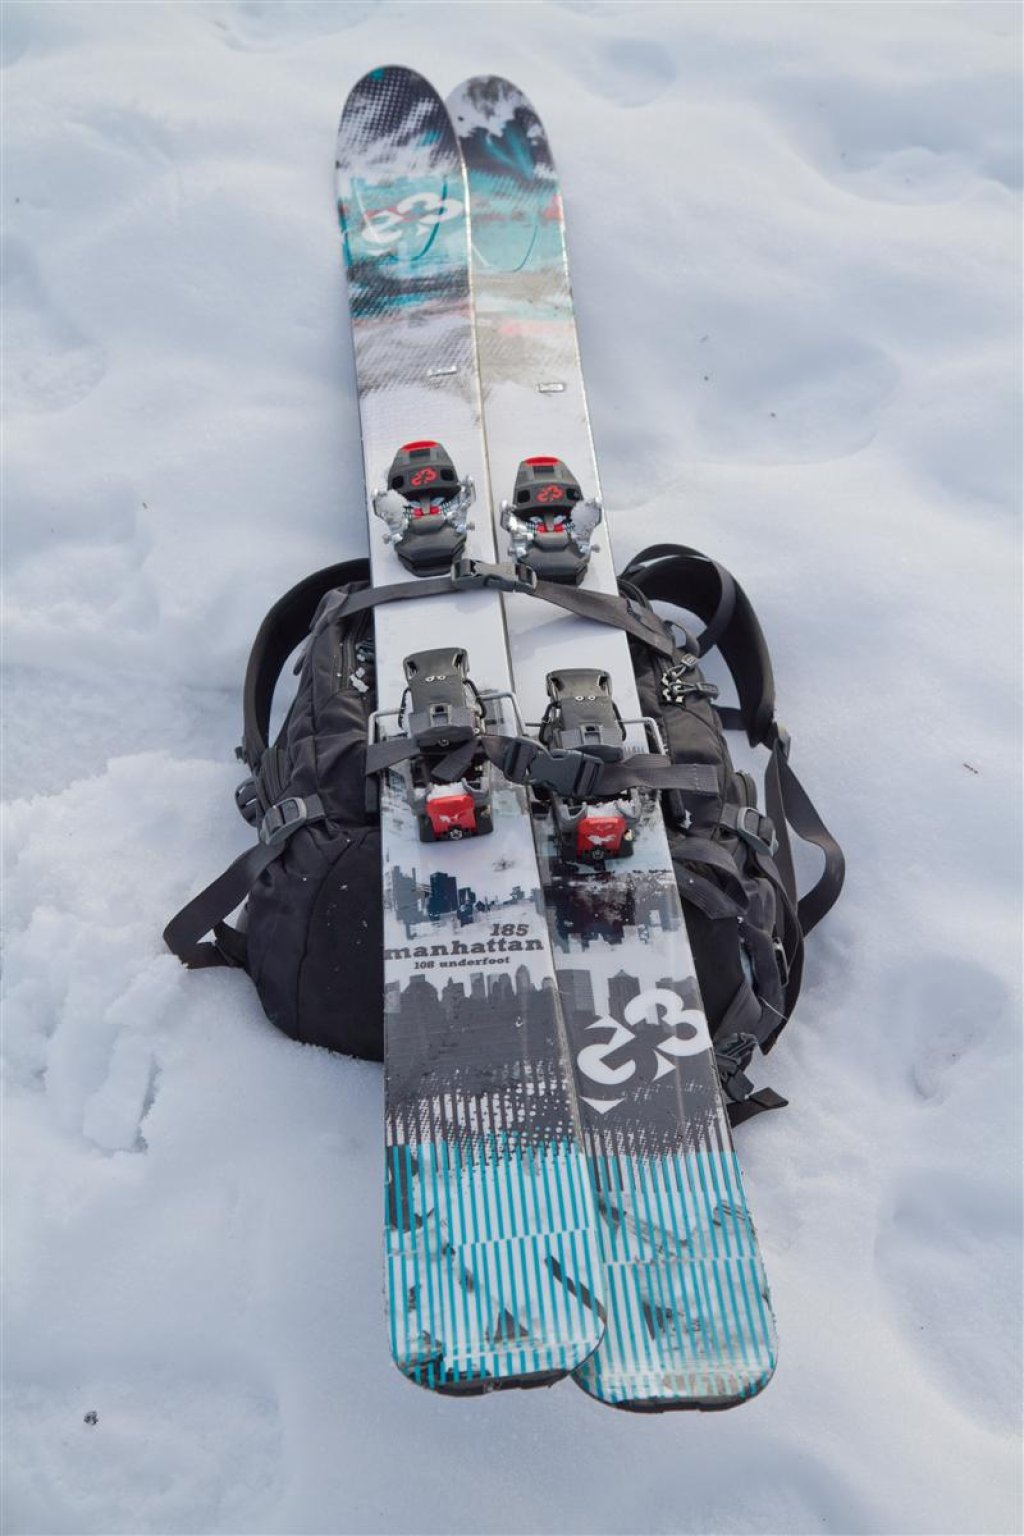 Frontal ski or board attachment